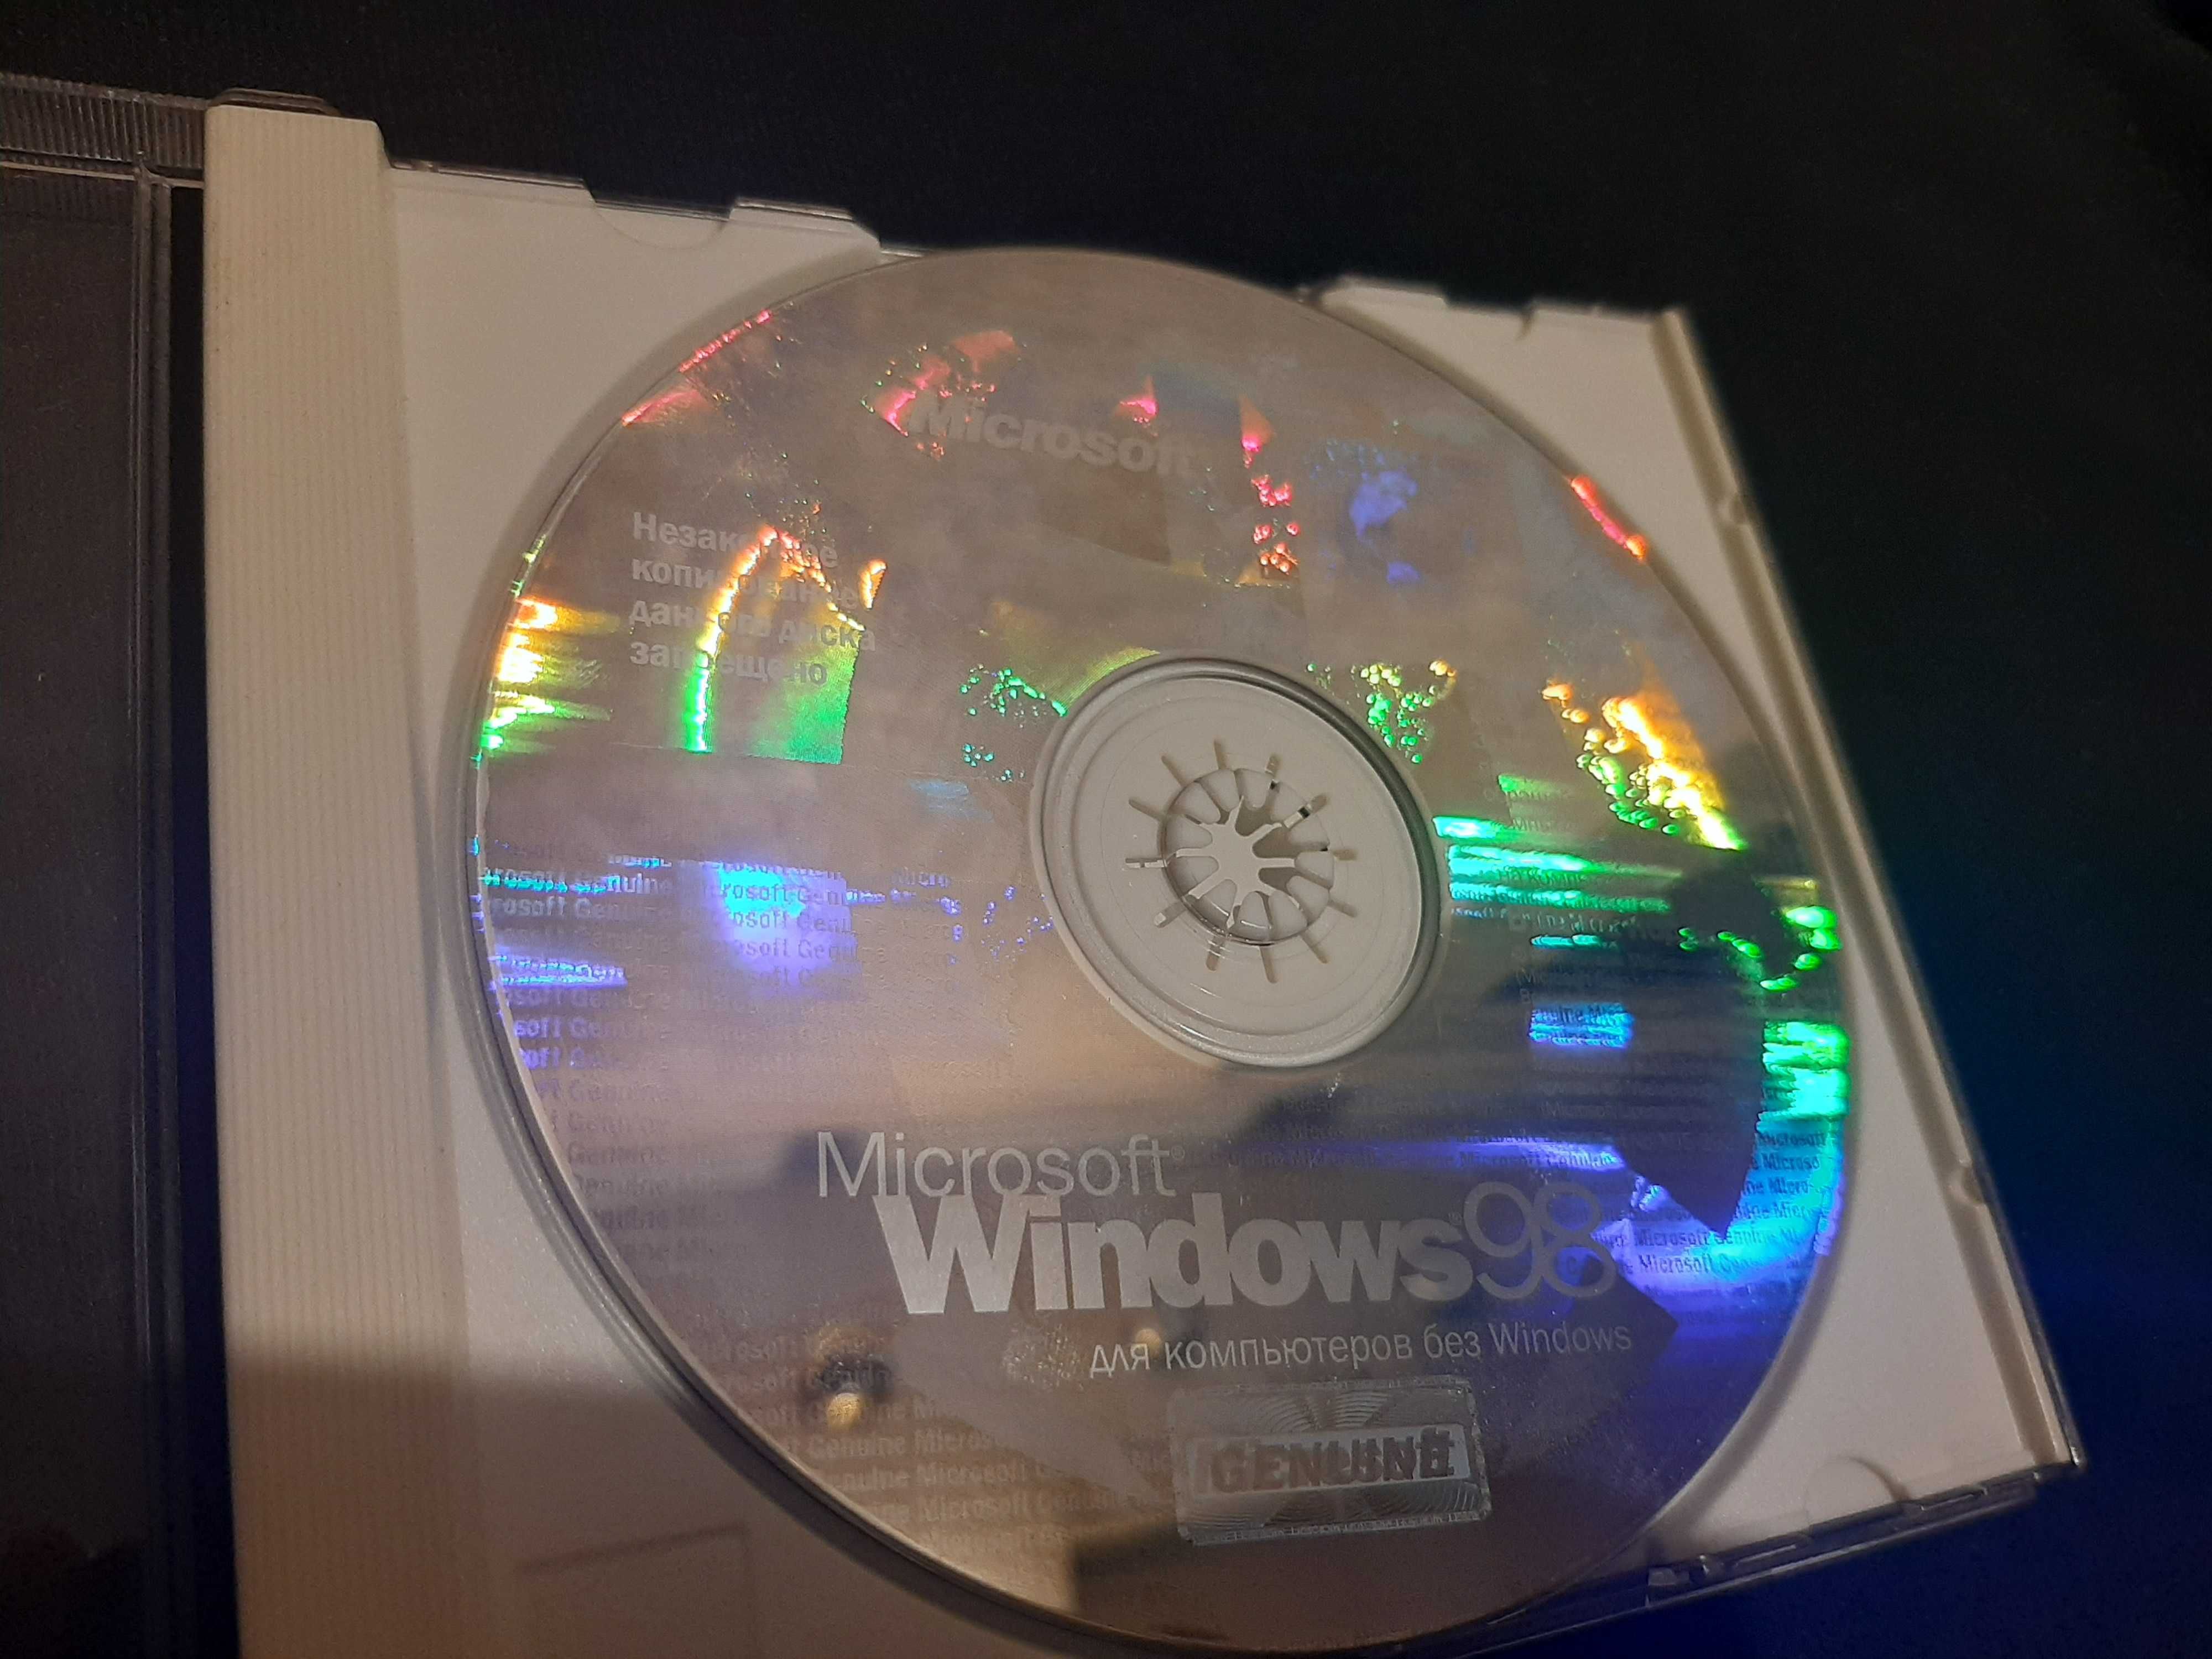 Оригинальний диск Windows 98, второе издание.